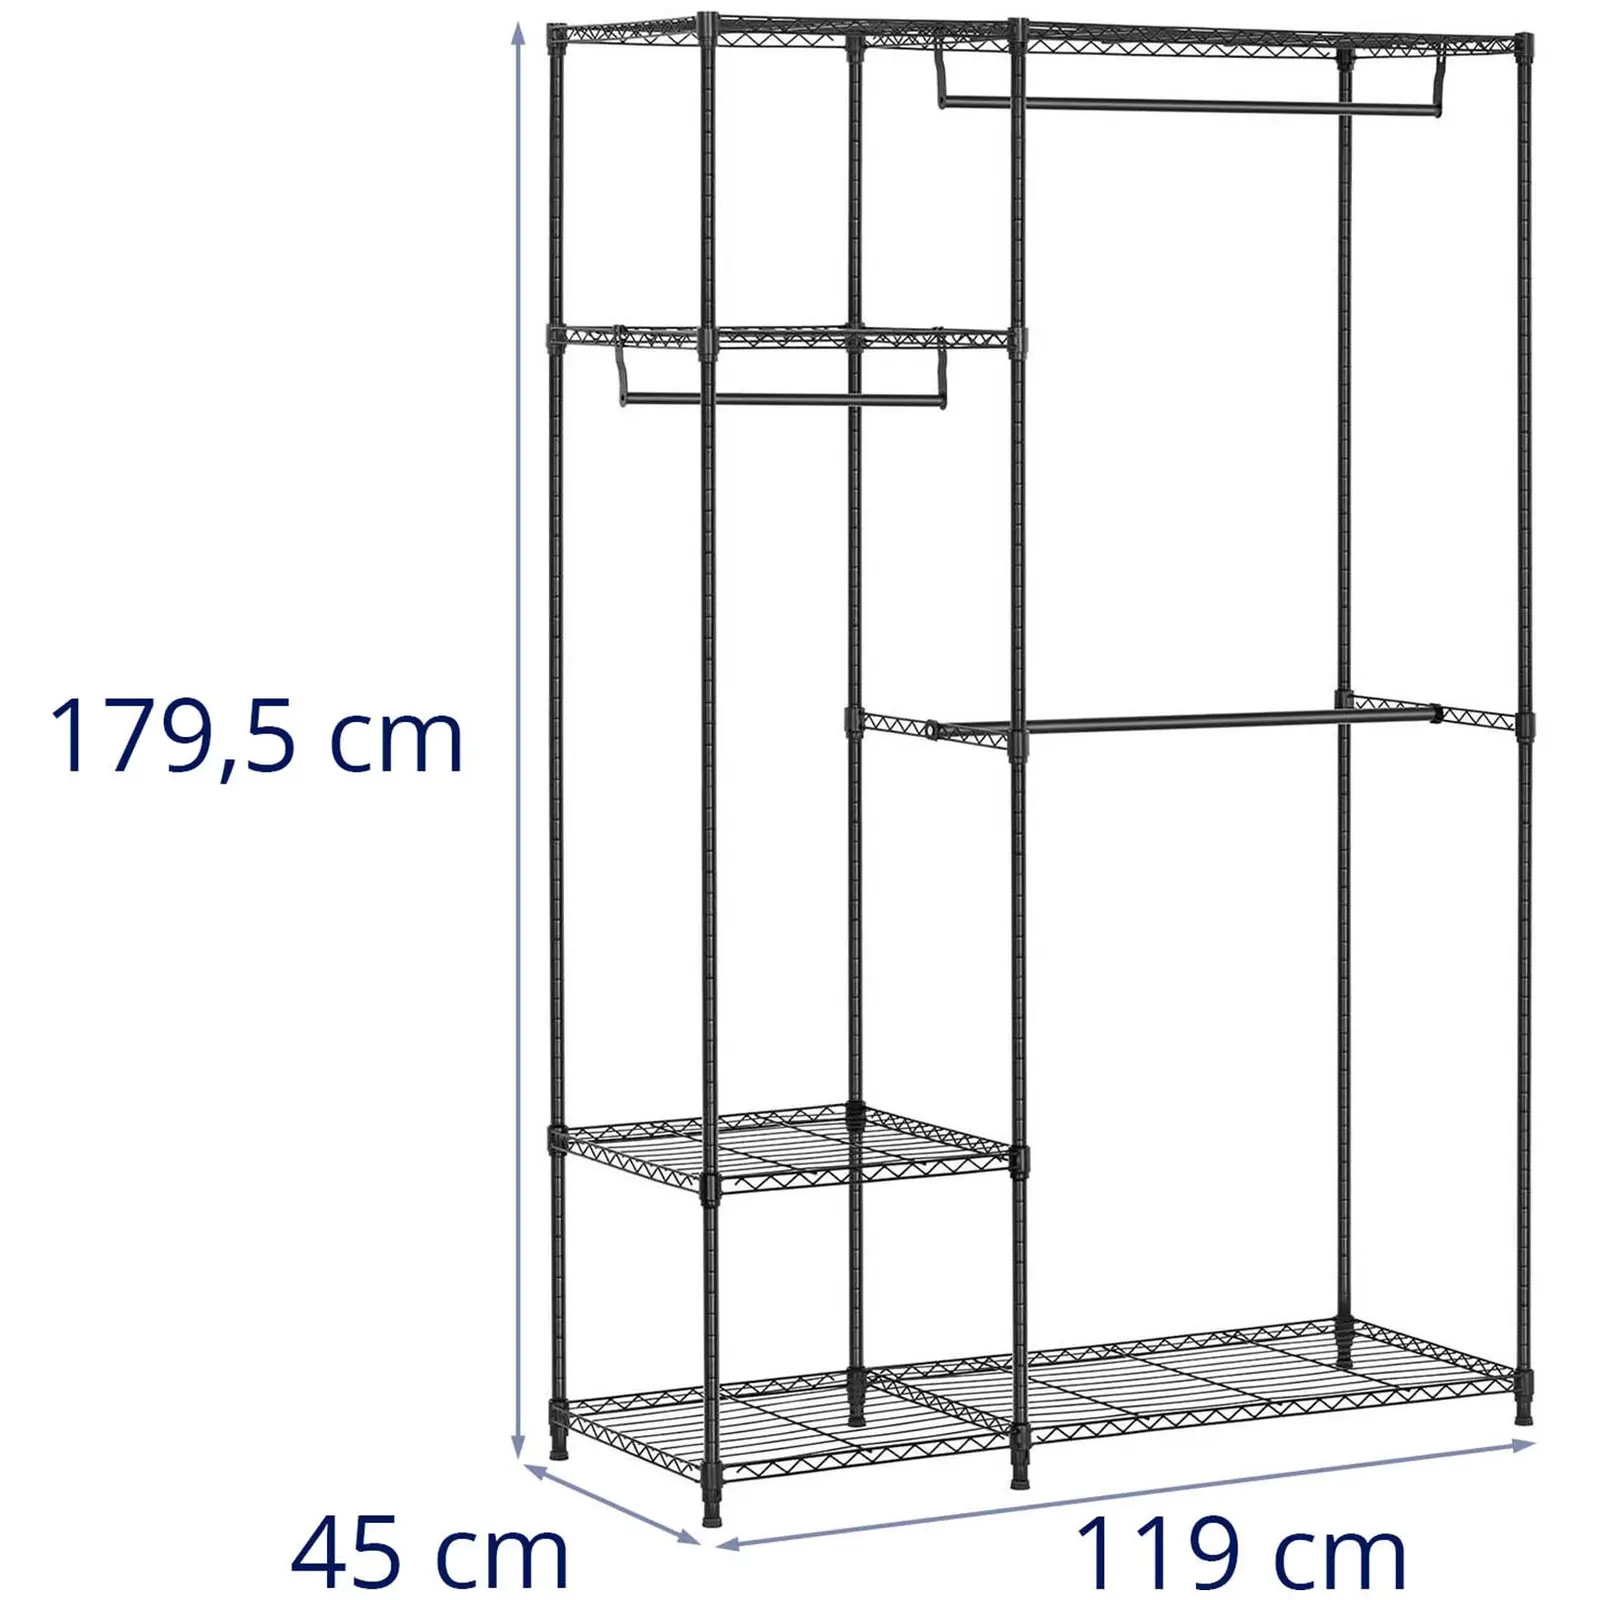 Estructura de metal para ropa - 120 x 45 x 179,5 cm - 270 kg - negra